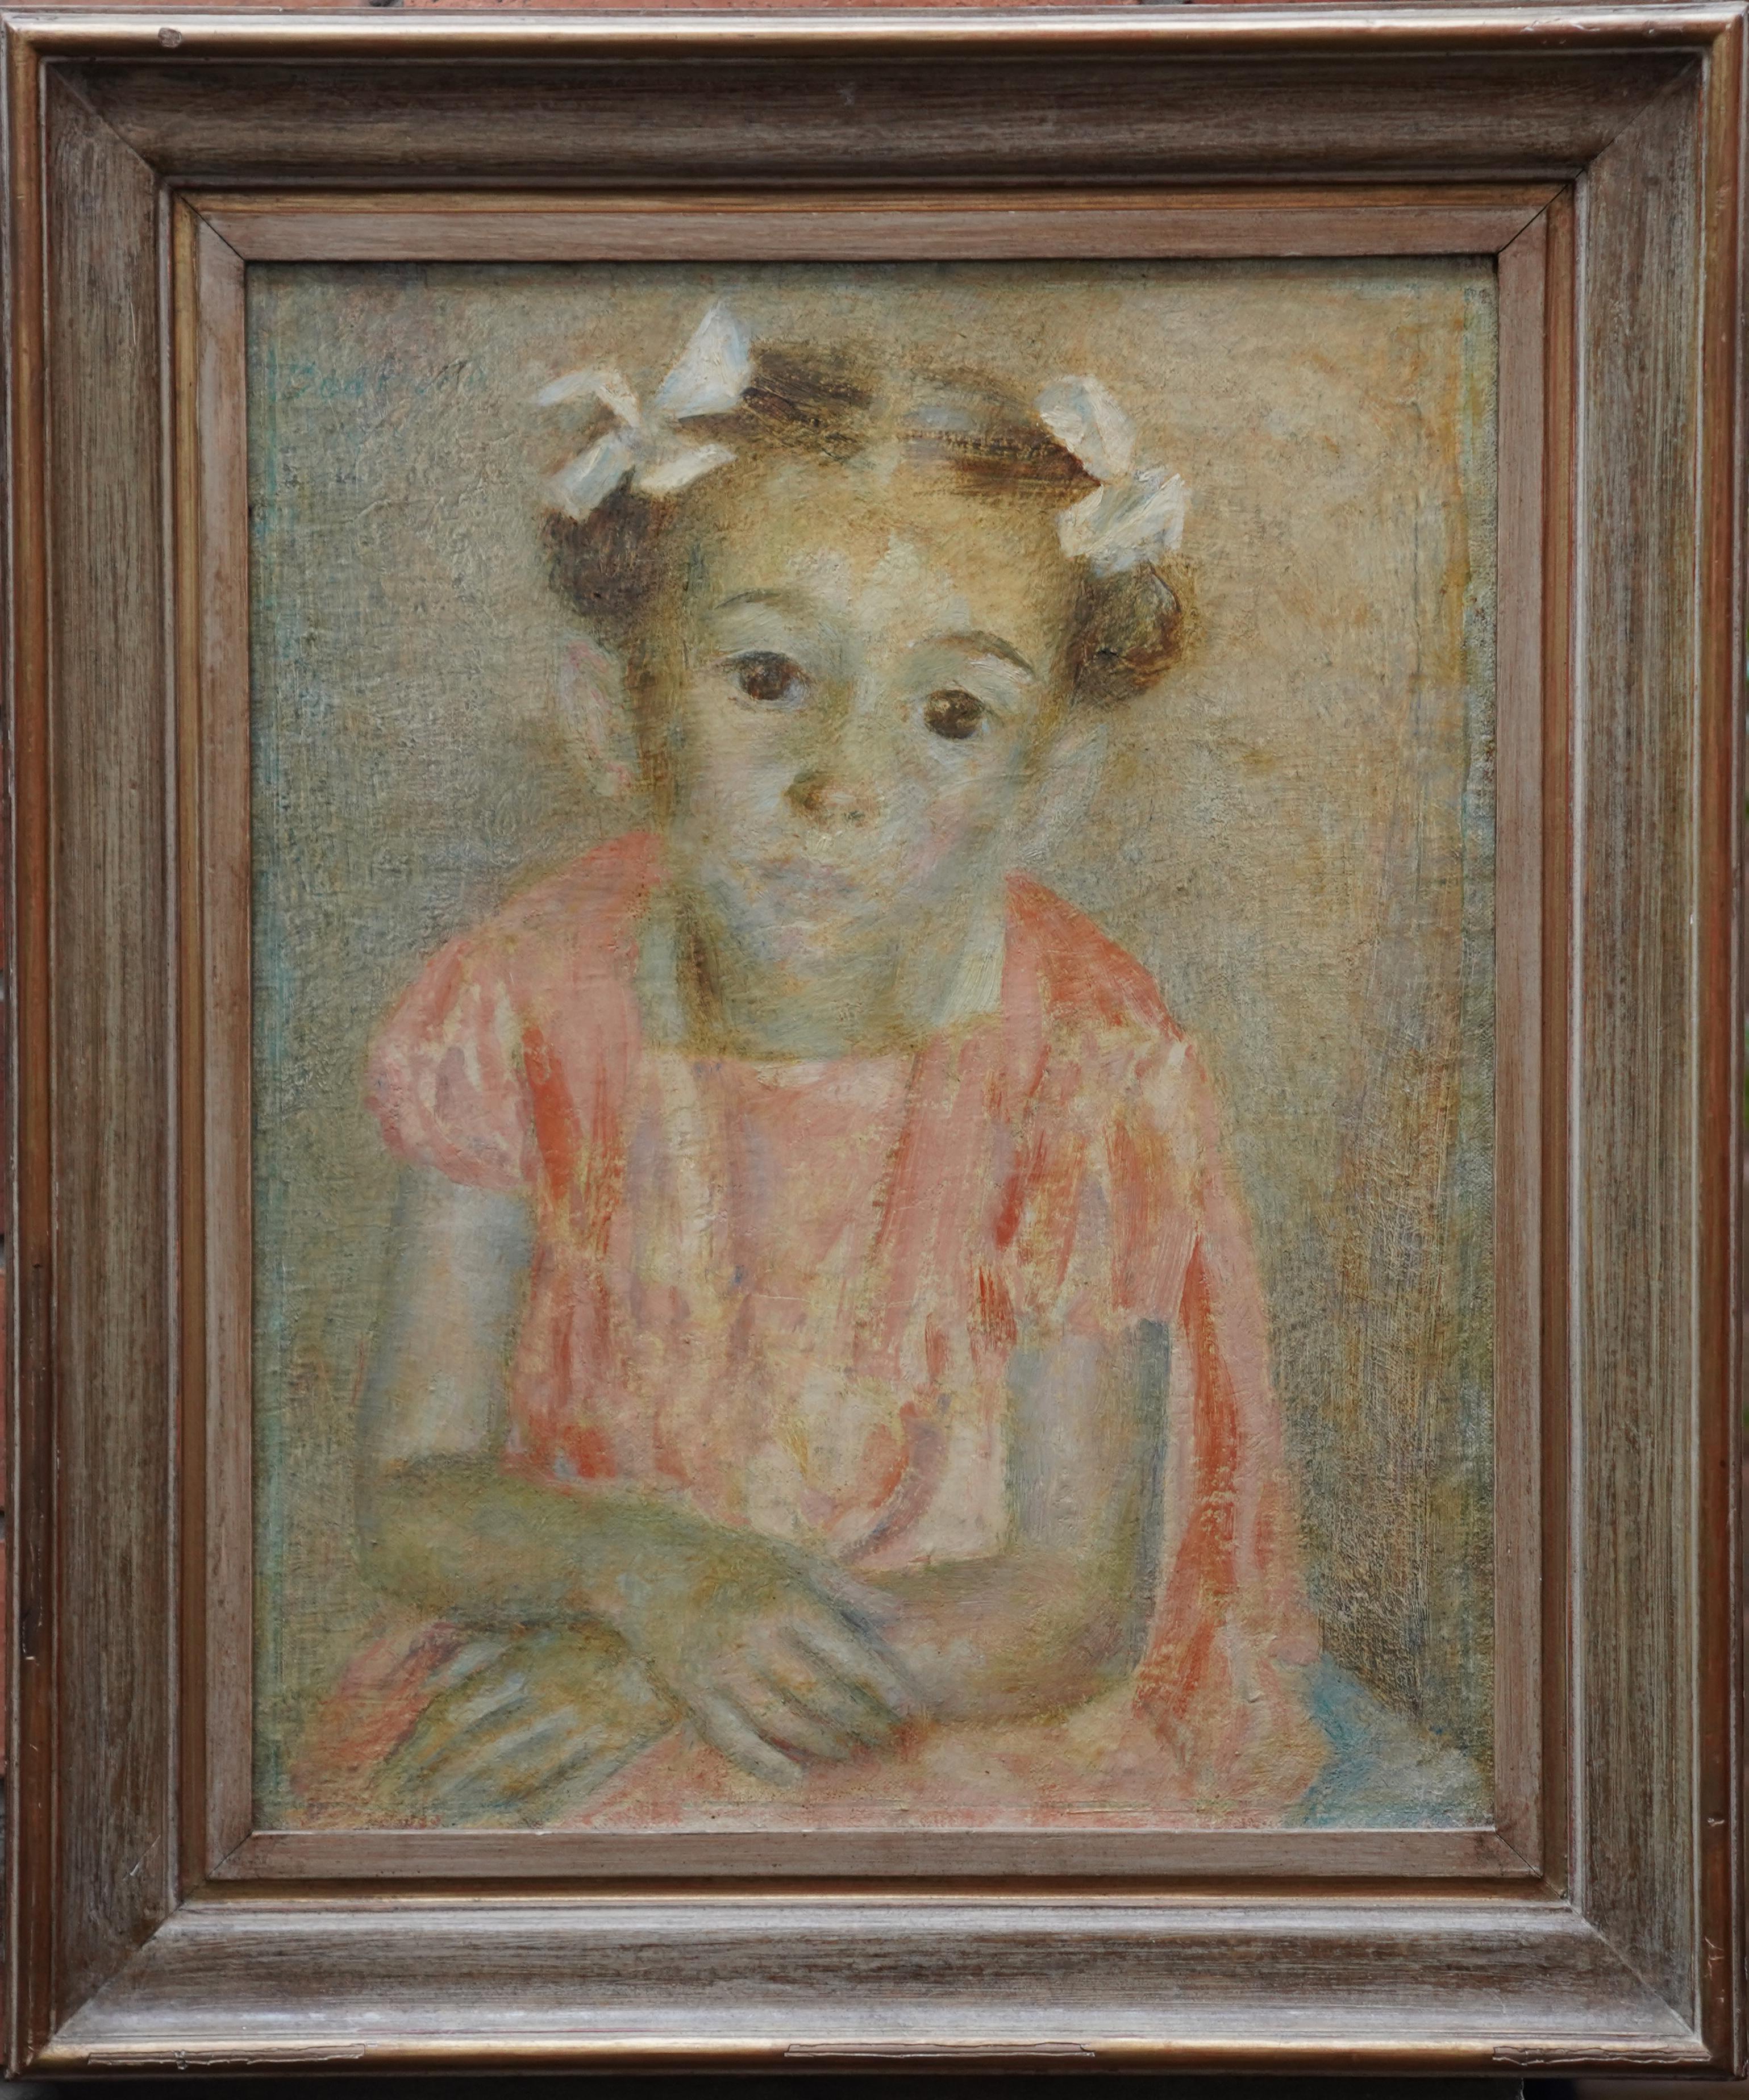 Portrait Painting Dod Procter - The Party Frock - Exposition d'art britannique des années 1940, peinture à l'huile de portrait d'enfant féminine, RA